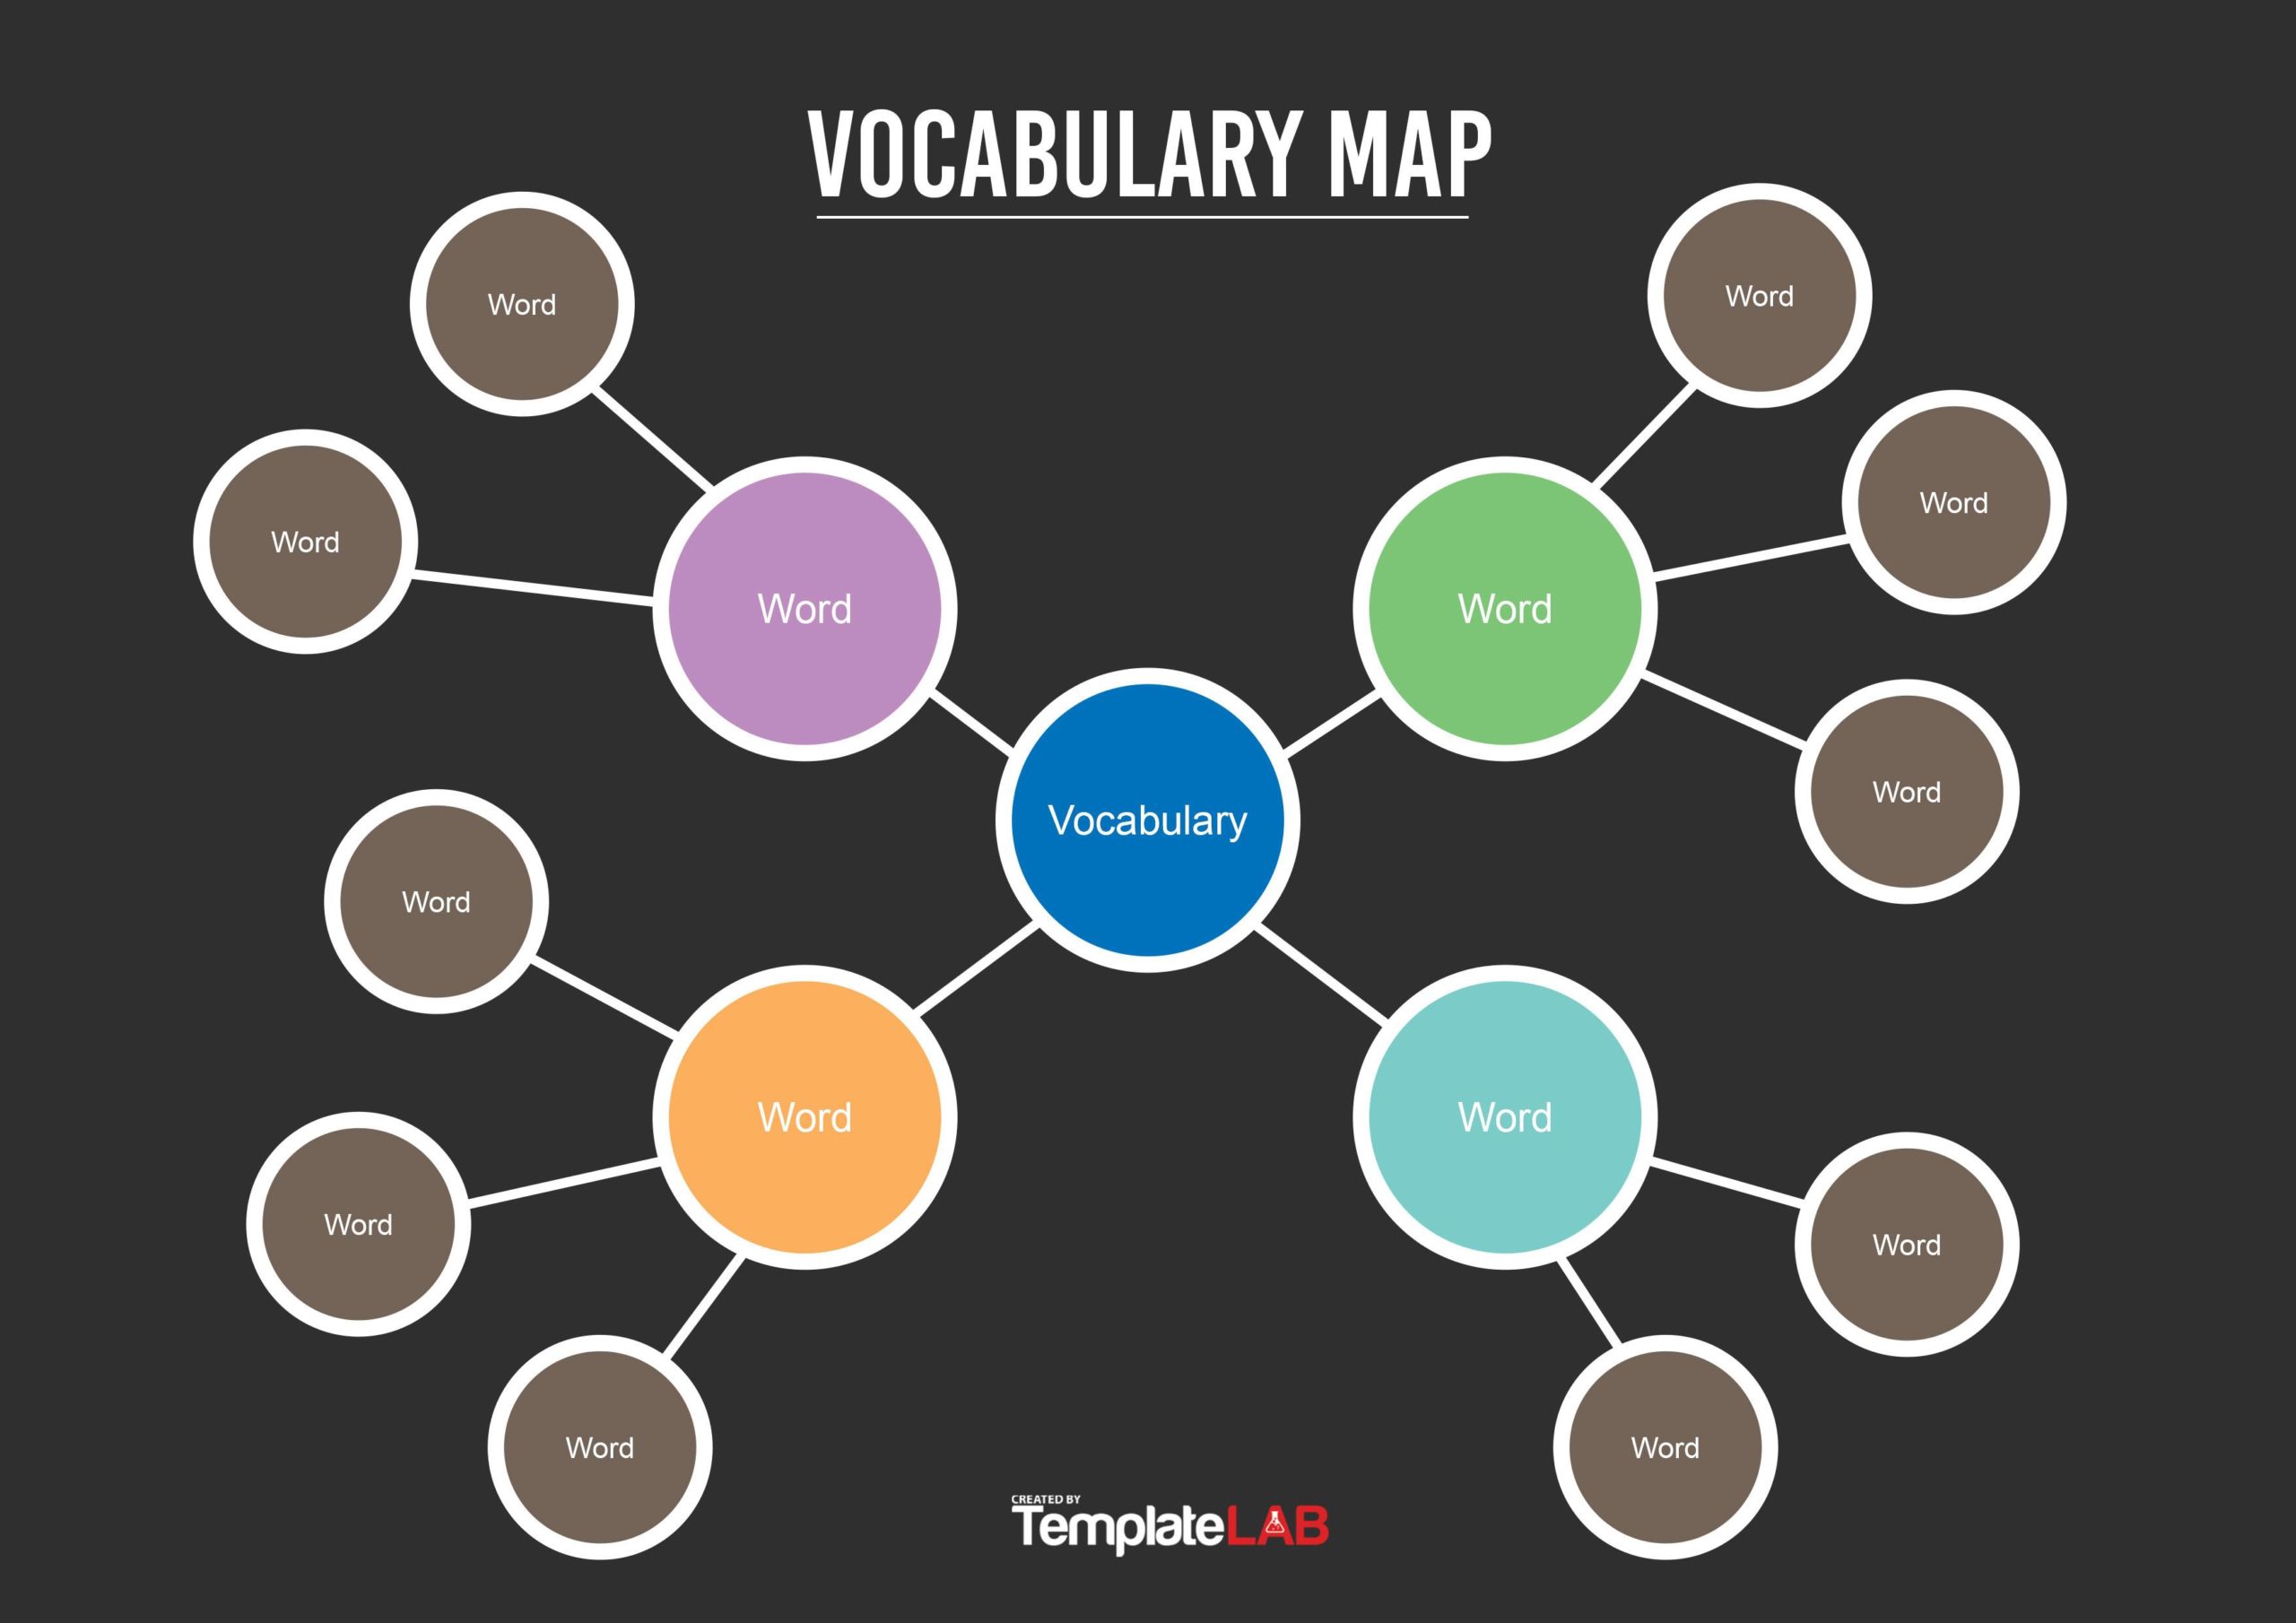 Free Vocabulary Concept Map Template V2